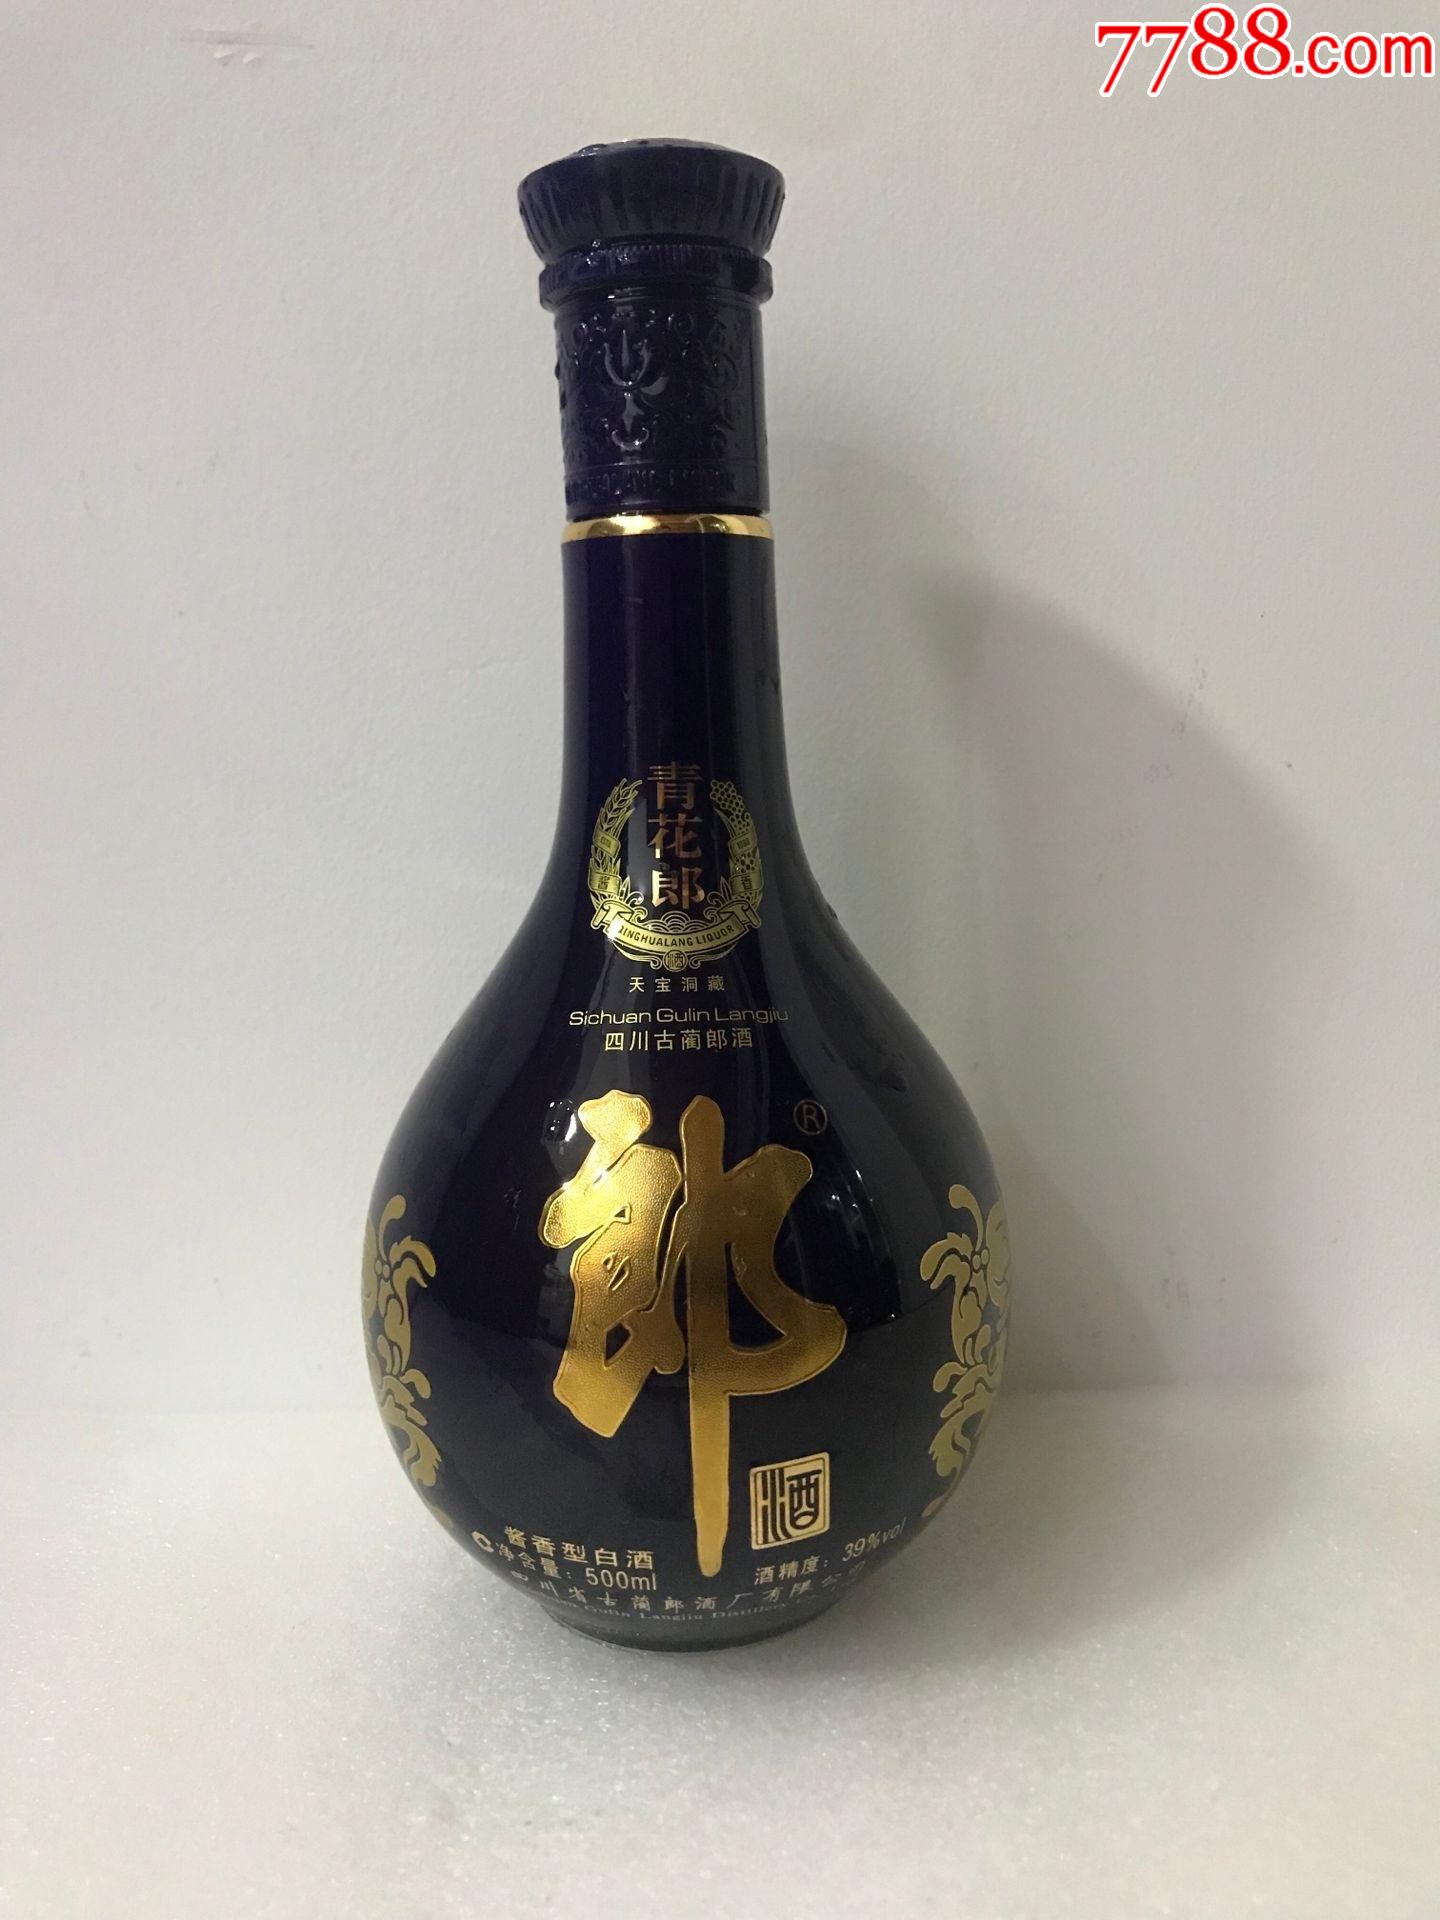 贵州茅台酒瓶各一个￥8889品99998ml红运郎酒瓶一个带盒￥4008品